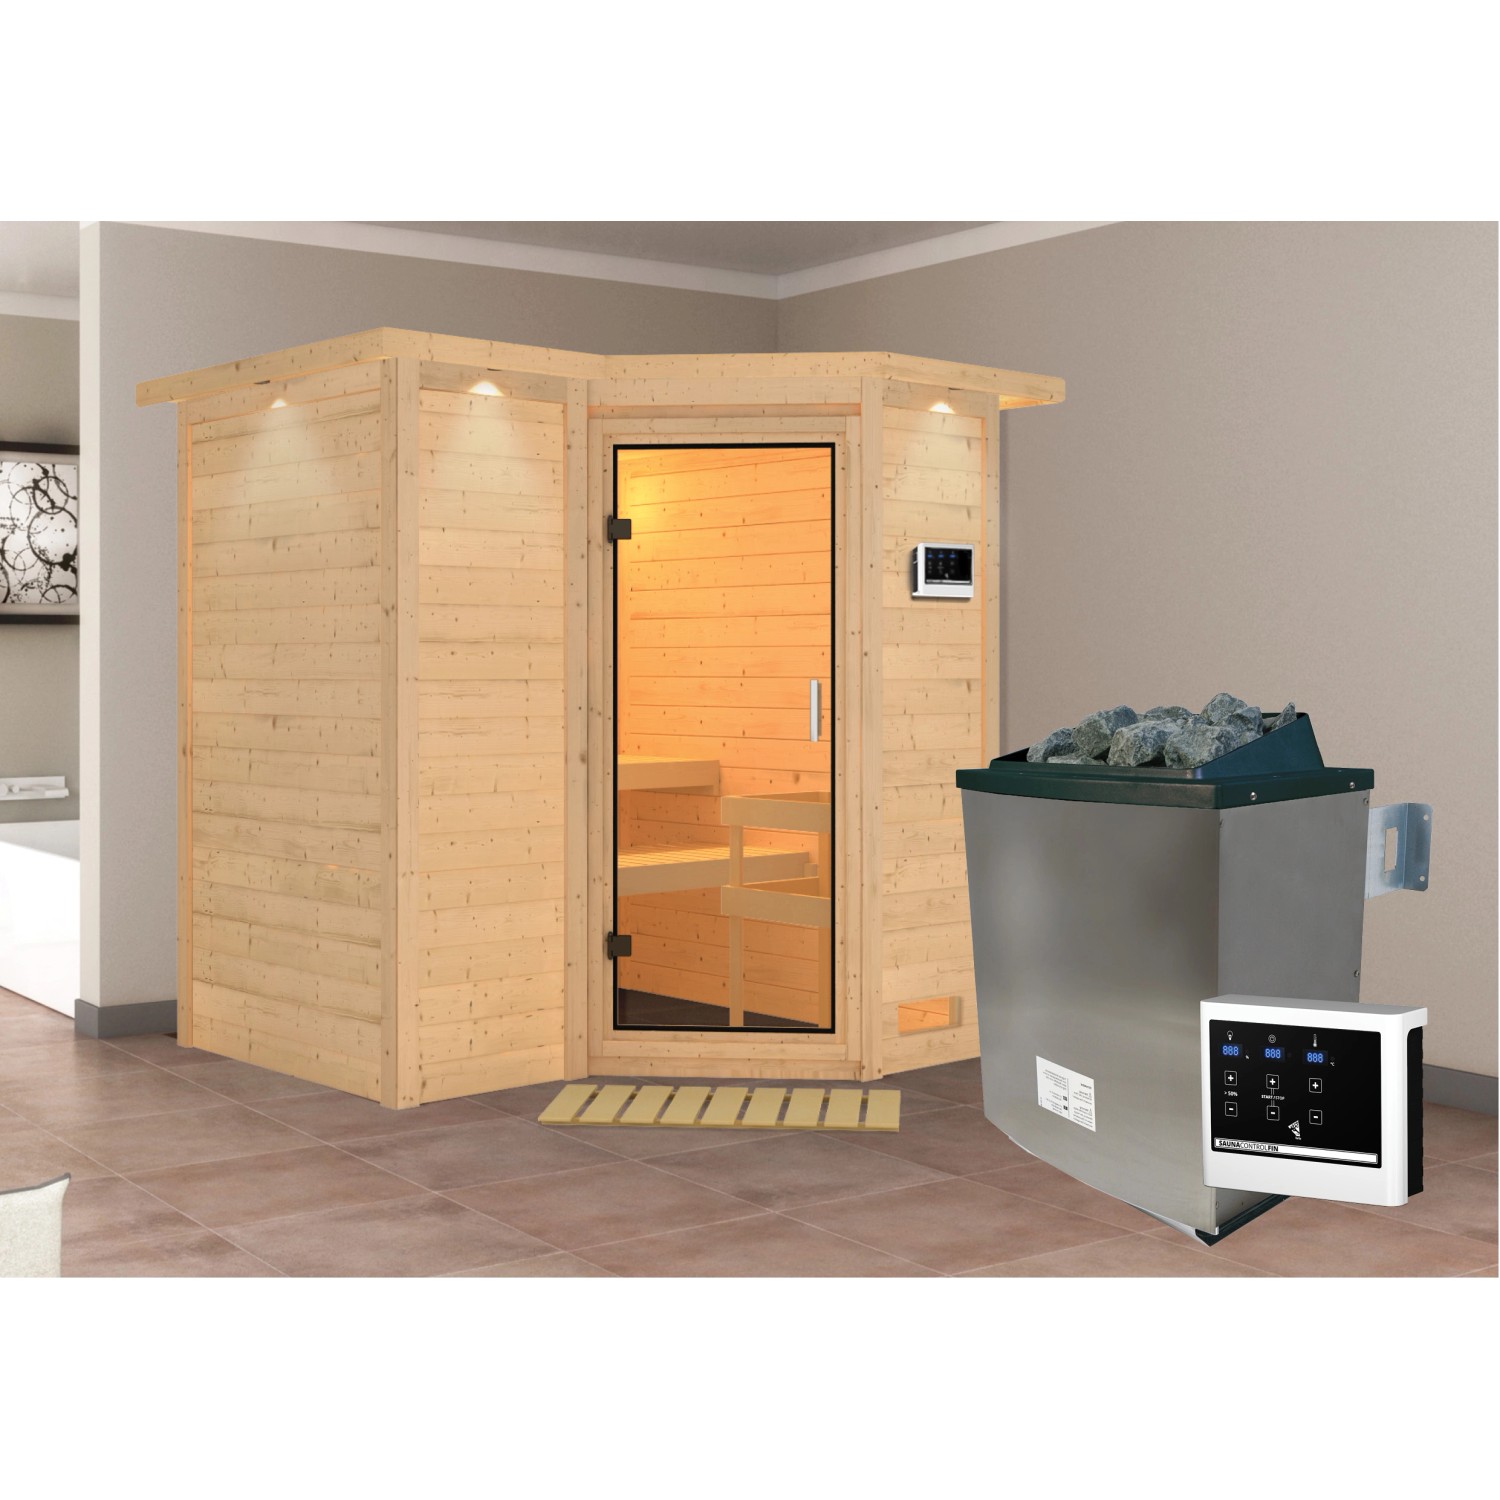 Woodfeeling Sauna Steena 1, Ofen, externe Steuerung Easy, Glastür, LED-Dach günstig online kaufen